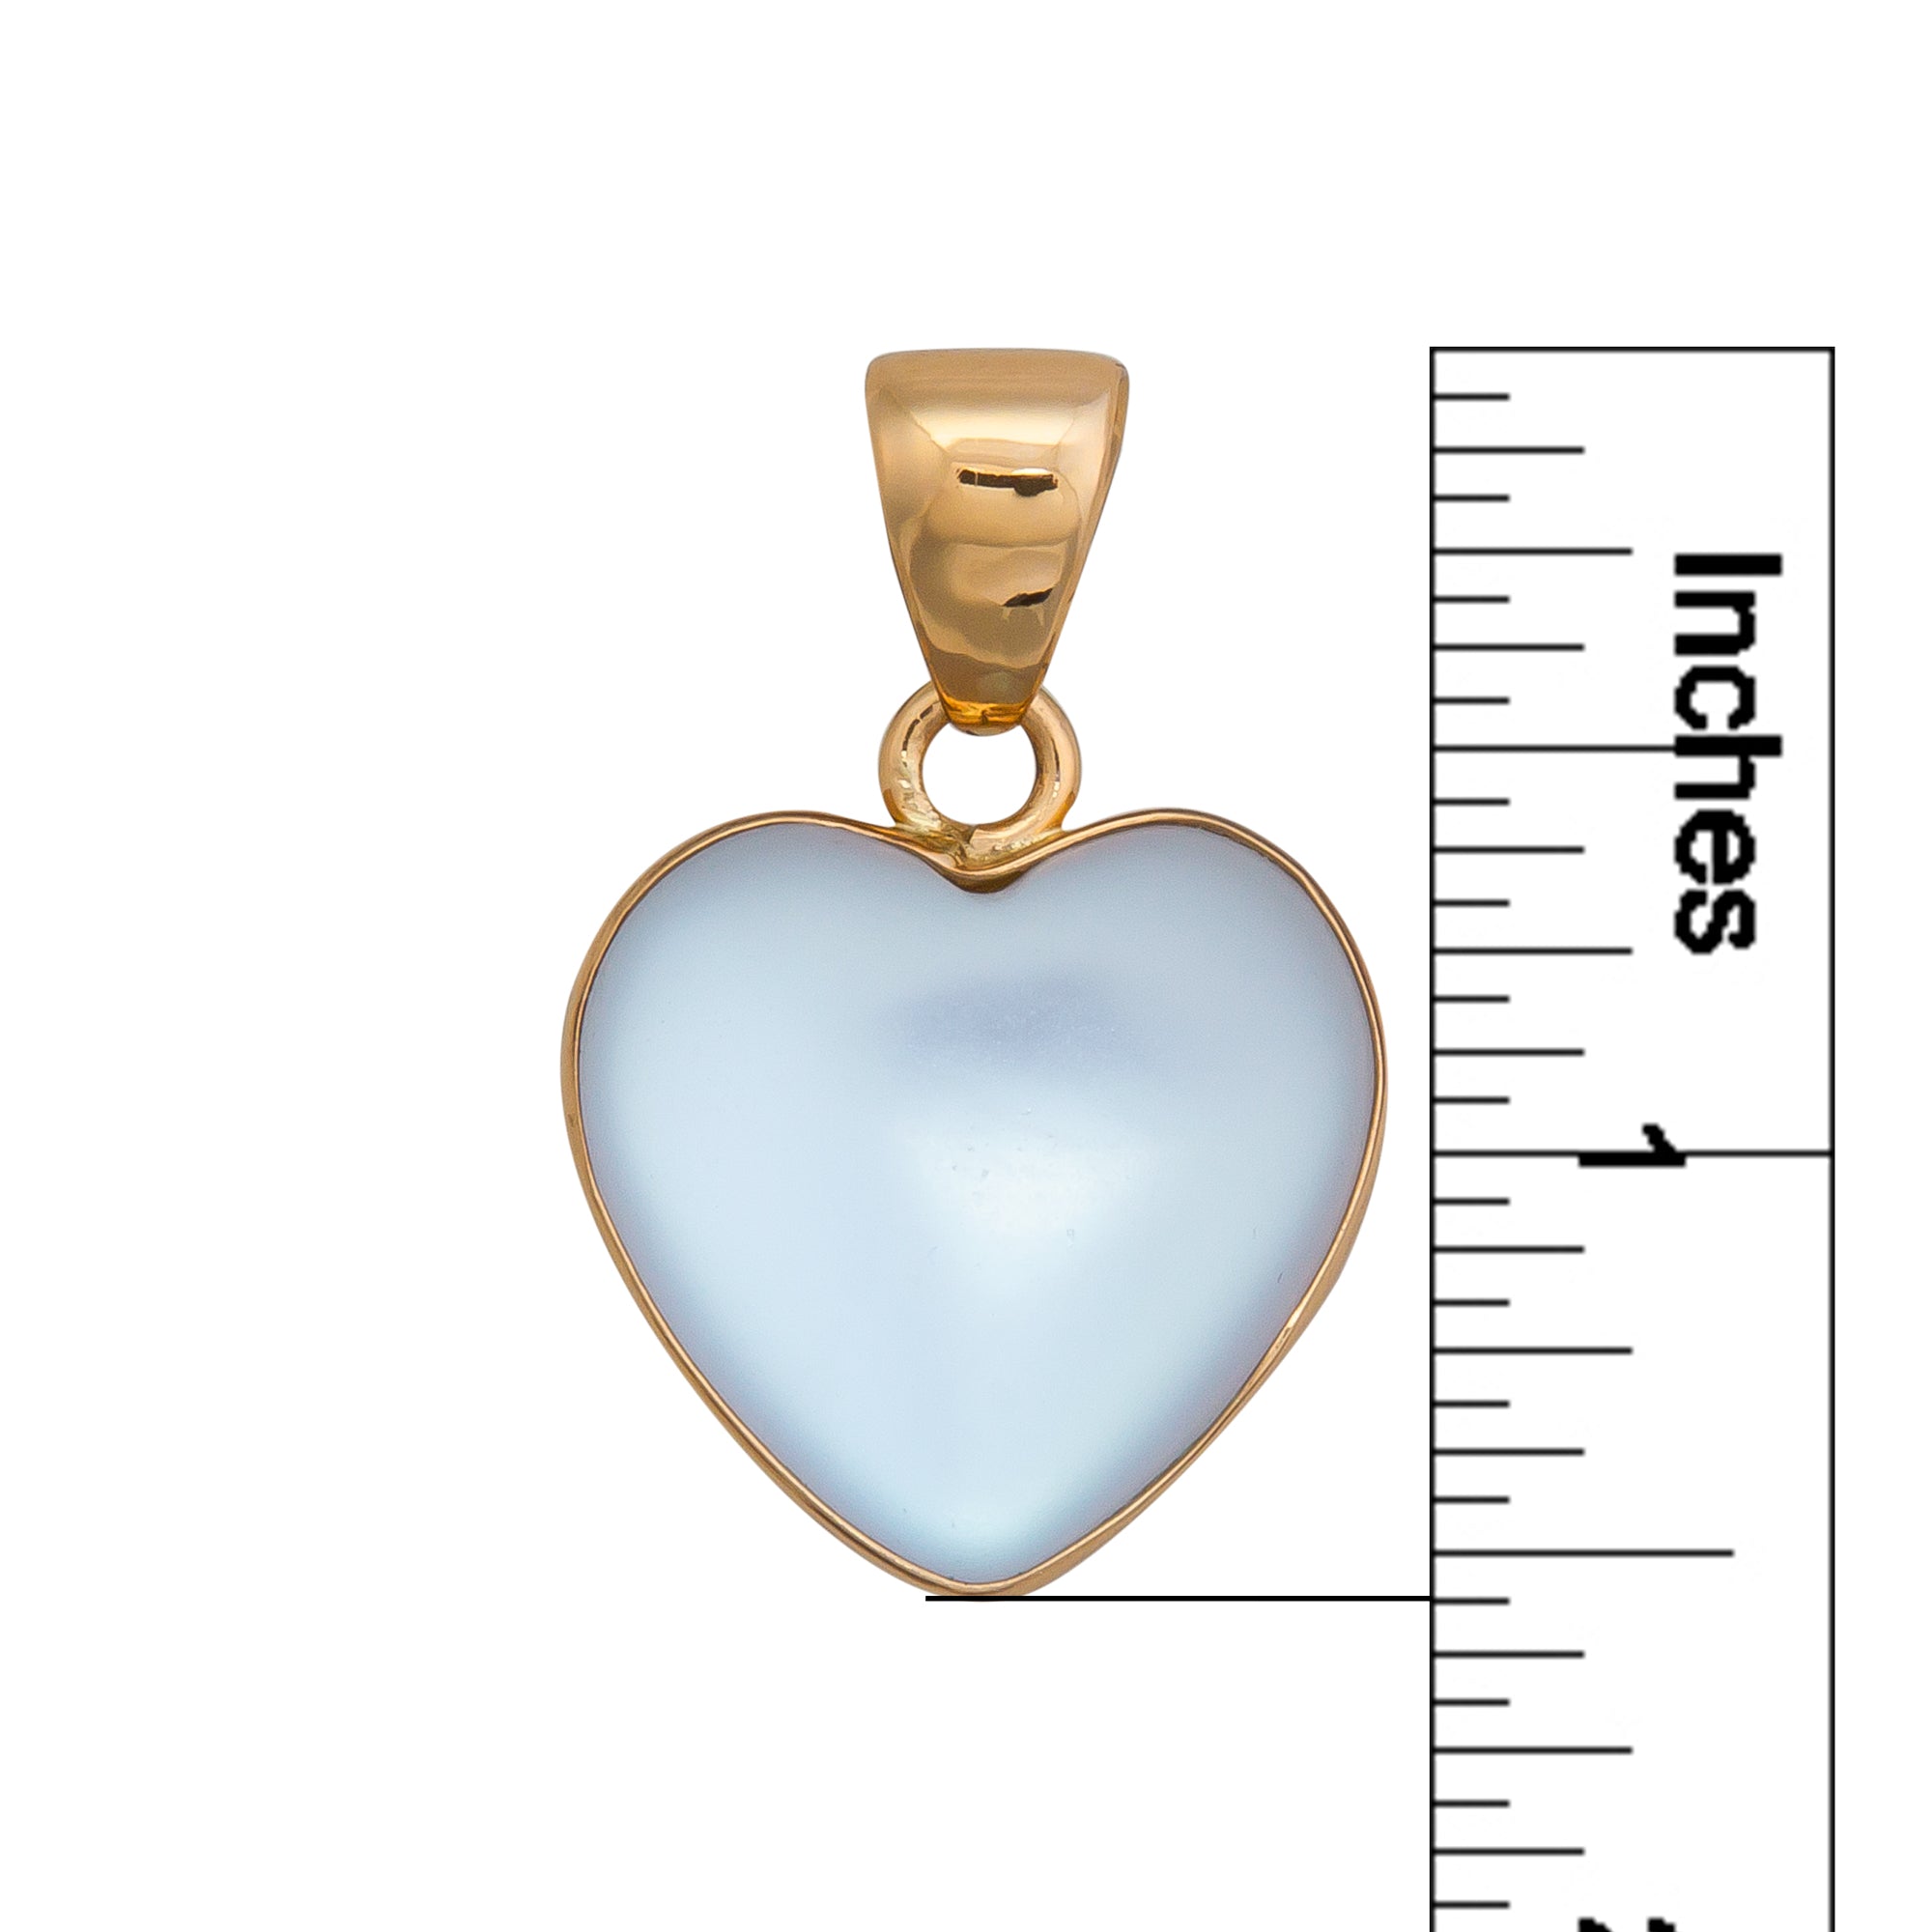 Alchemia Luminite Heart Pendant | Charles Albert Jewelry